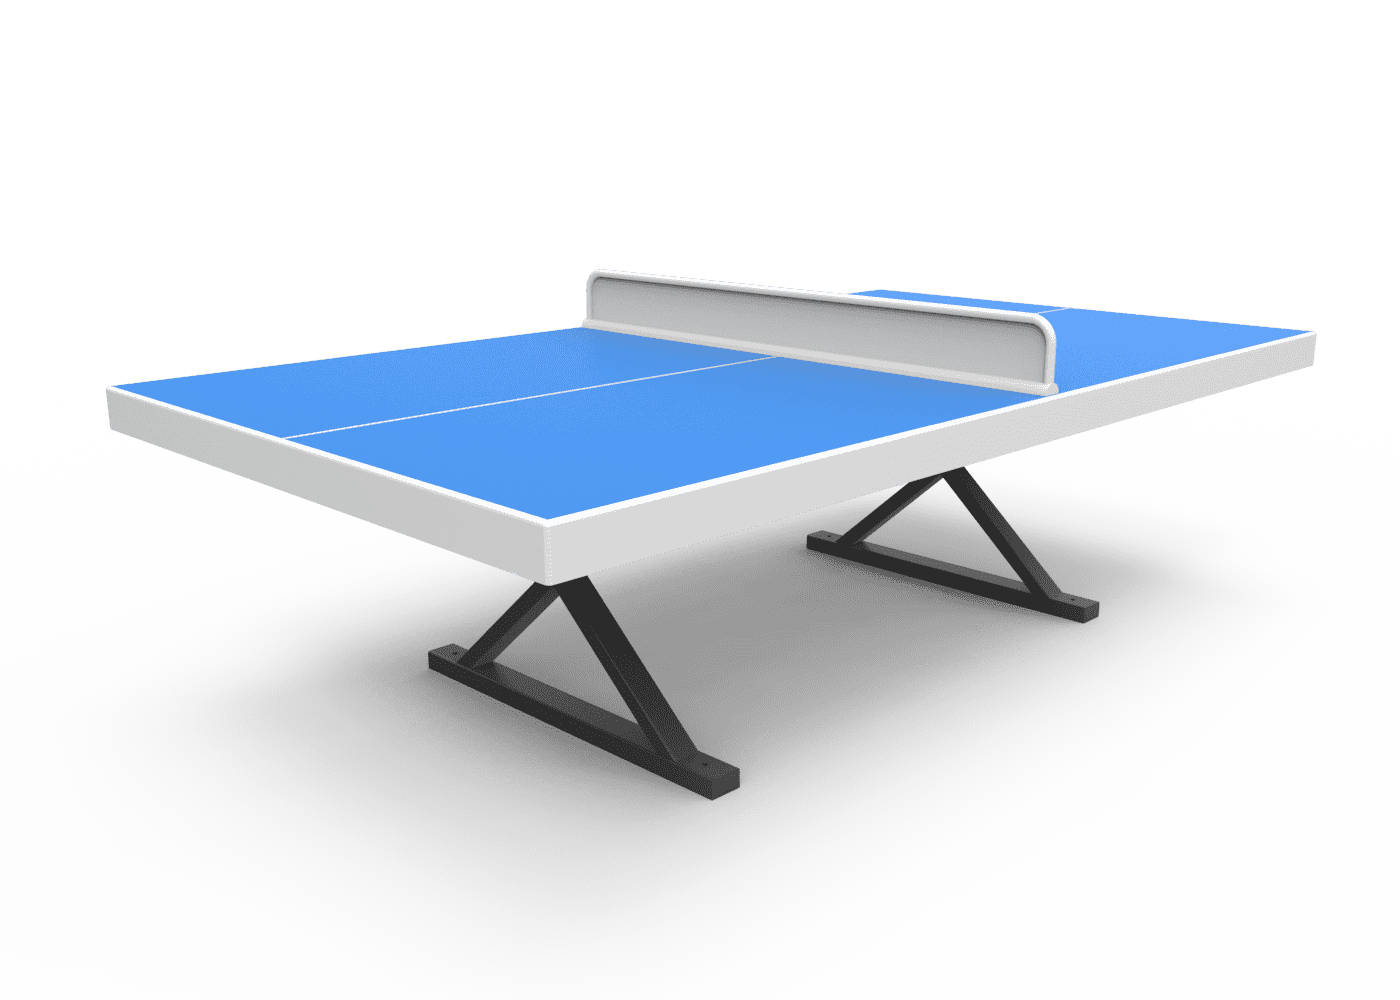 Mesa Ping Pong